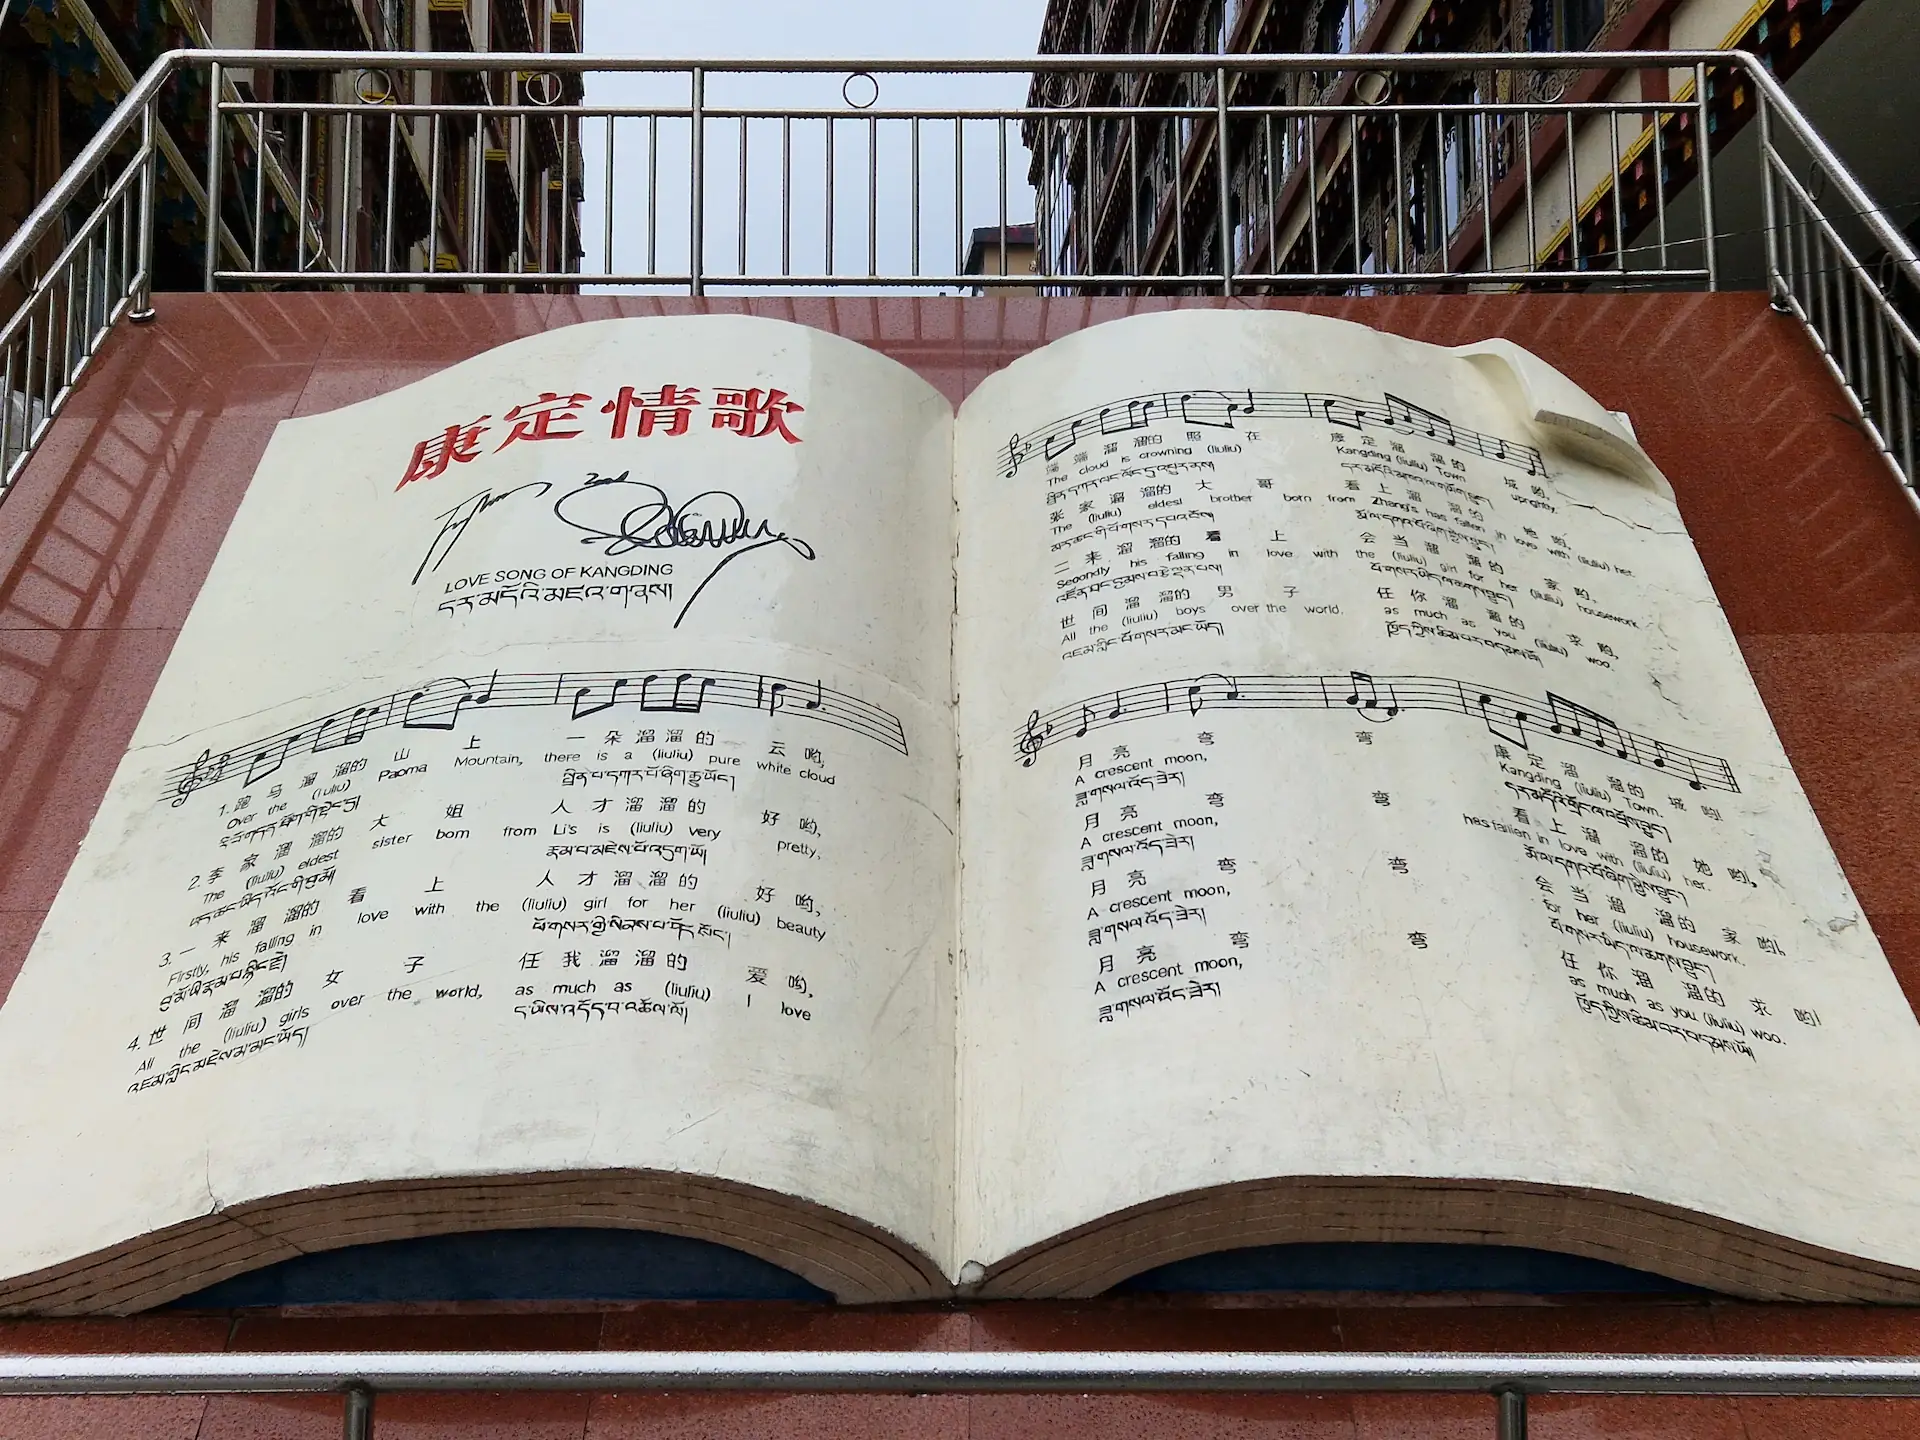 Statue d'un livre de partitions ouvert à la page de la Chanson d'amour de Kangding, avec paroles en chinois et en anglais